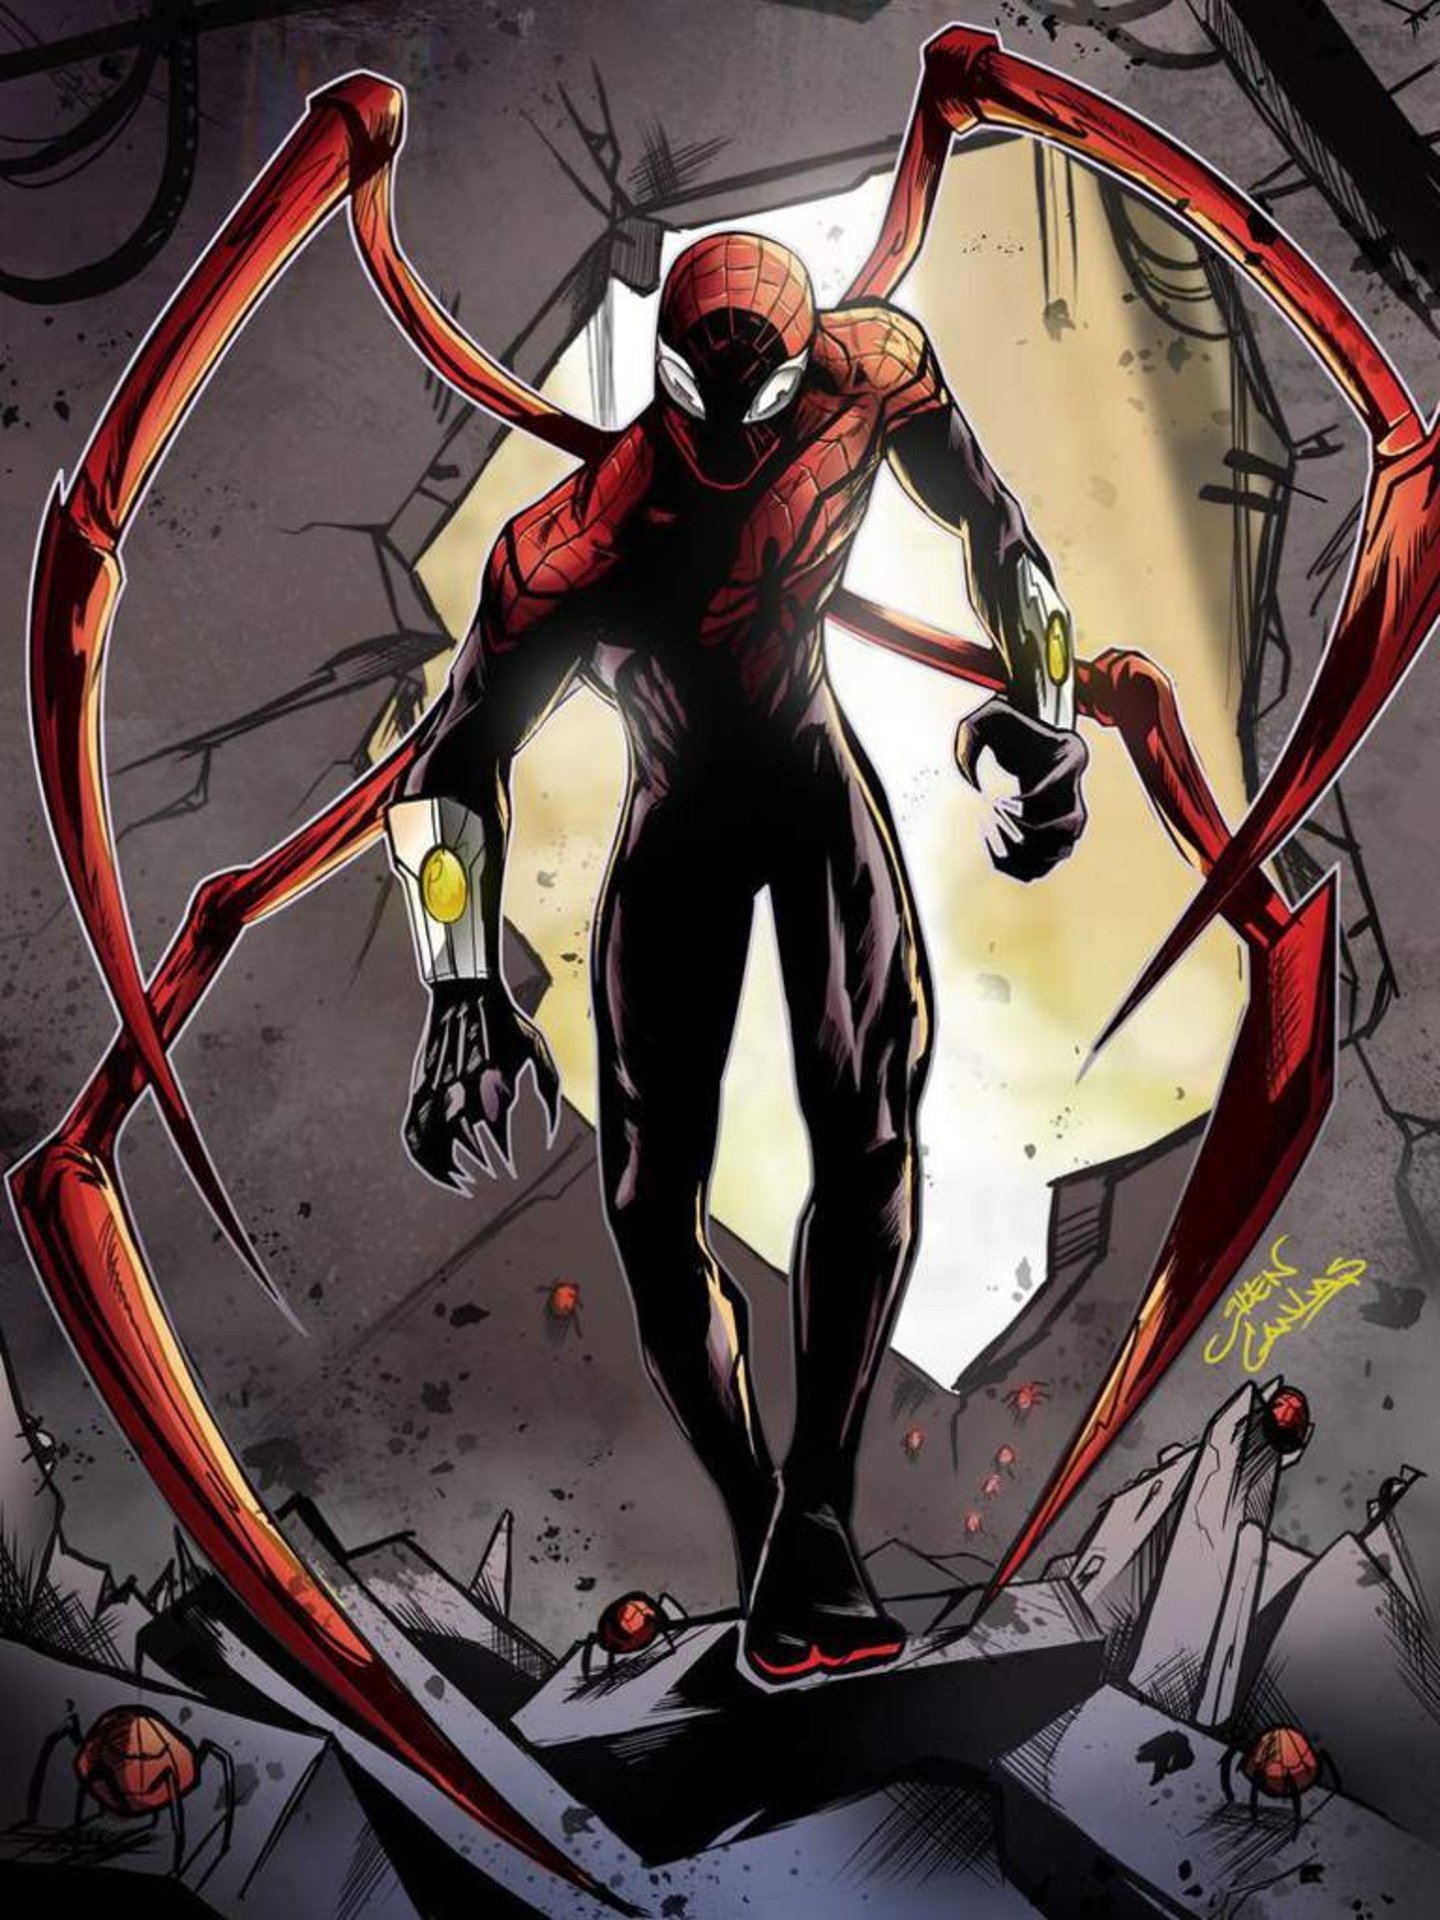 Personajes que se convirtieron en Spider-Man además de Peter Parker